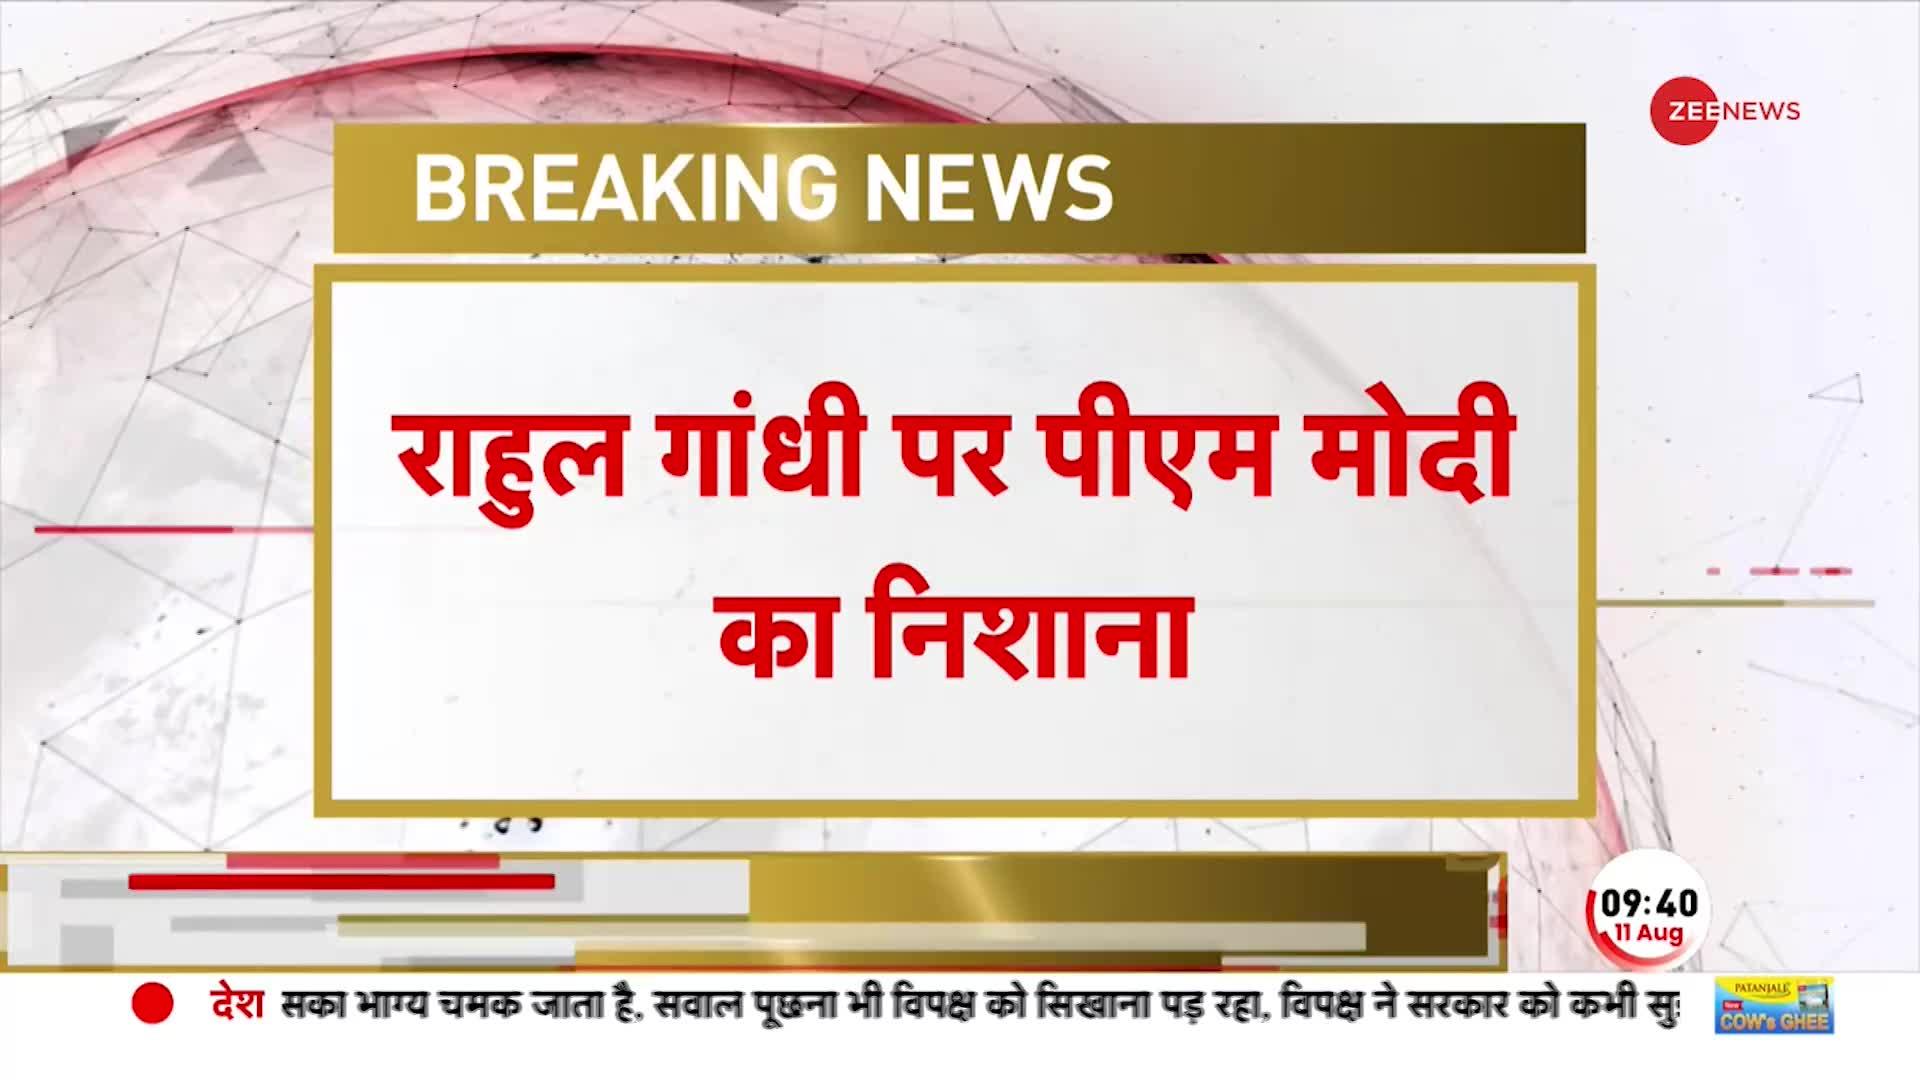 PM Modi ने Rahul Gandhi की मोहब्बत की दुकान वाले बयान पर तंज कंस एक Video जारी किया है | BJP Video